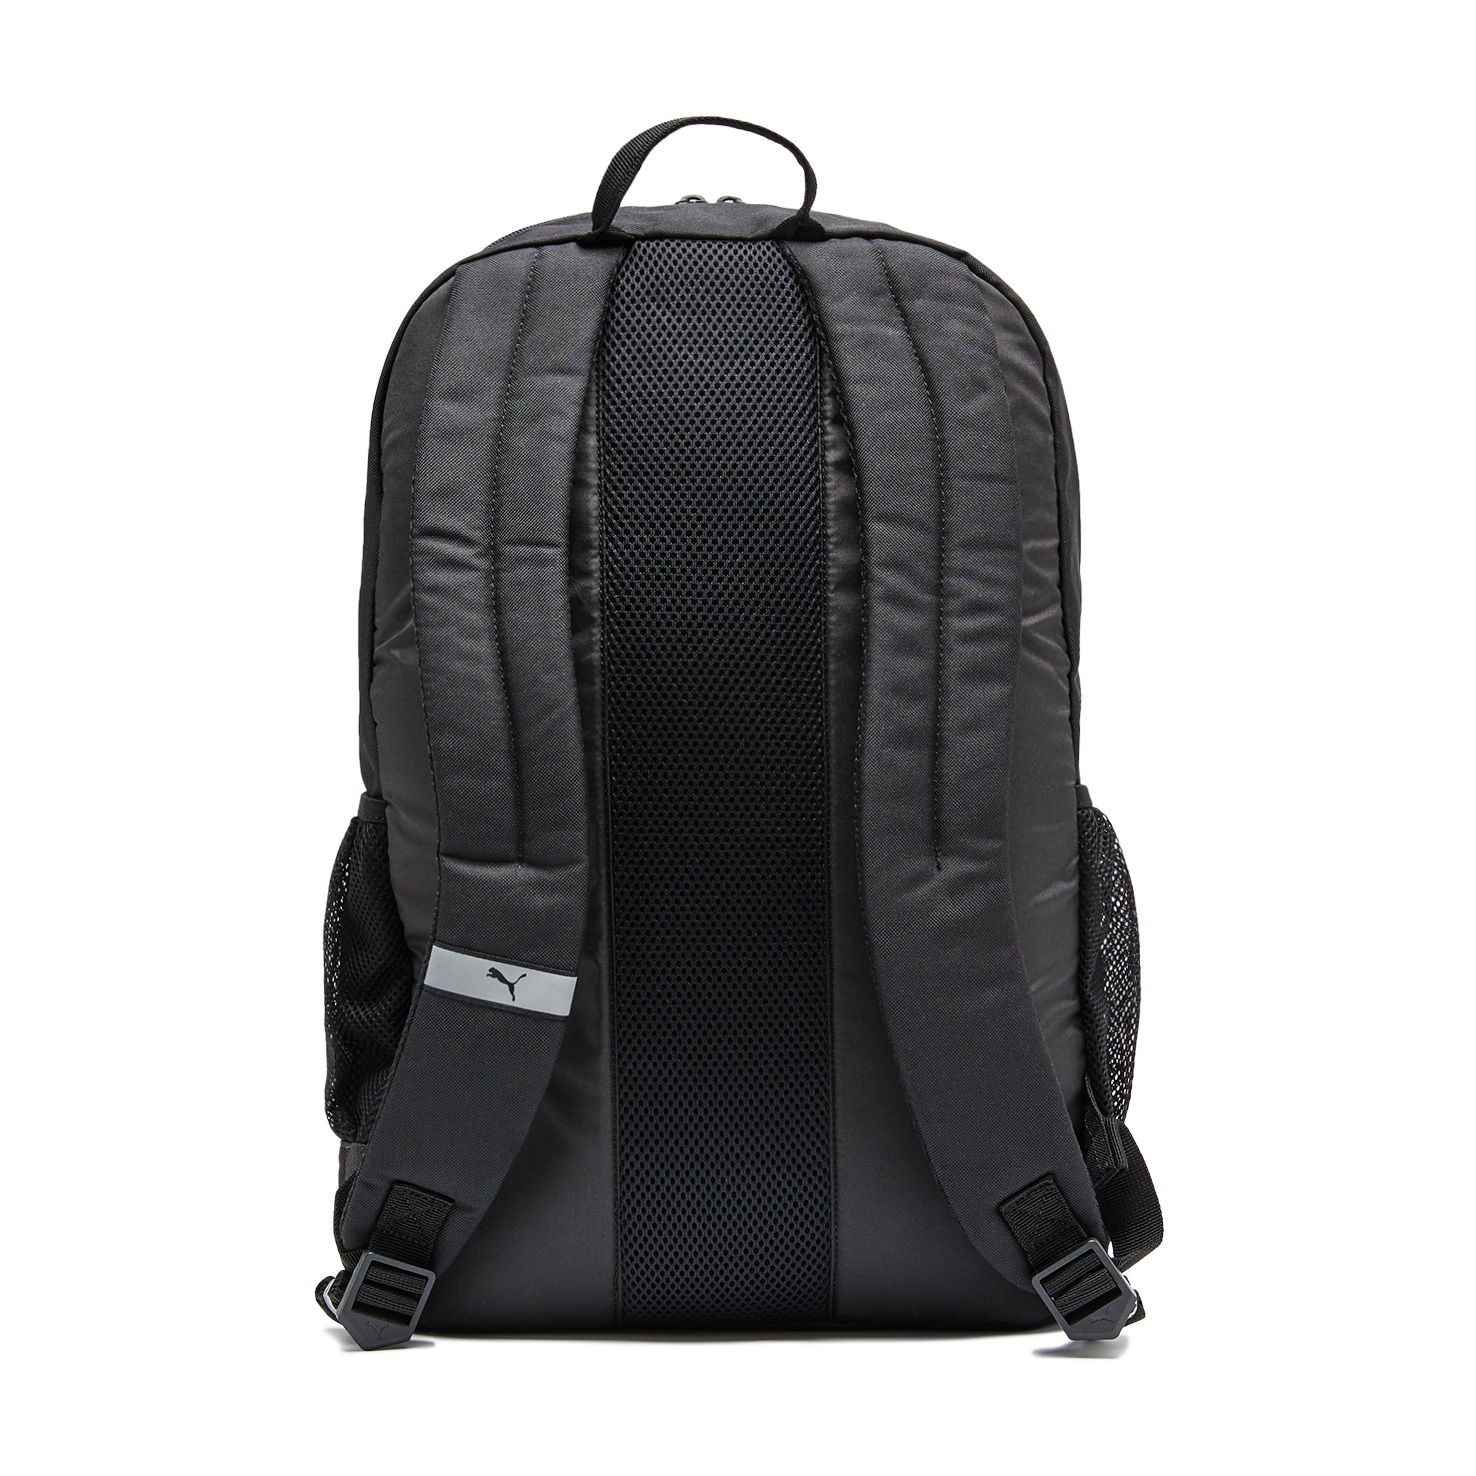 Deck Backpack PUMA, размер Один размер, цвет черный PM074706 - фото 2